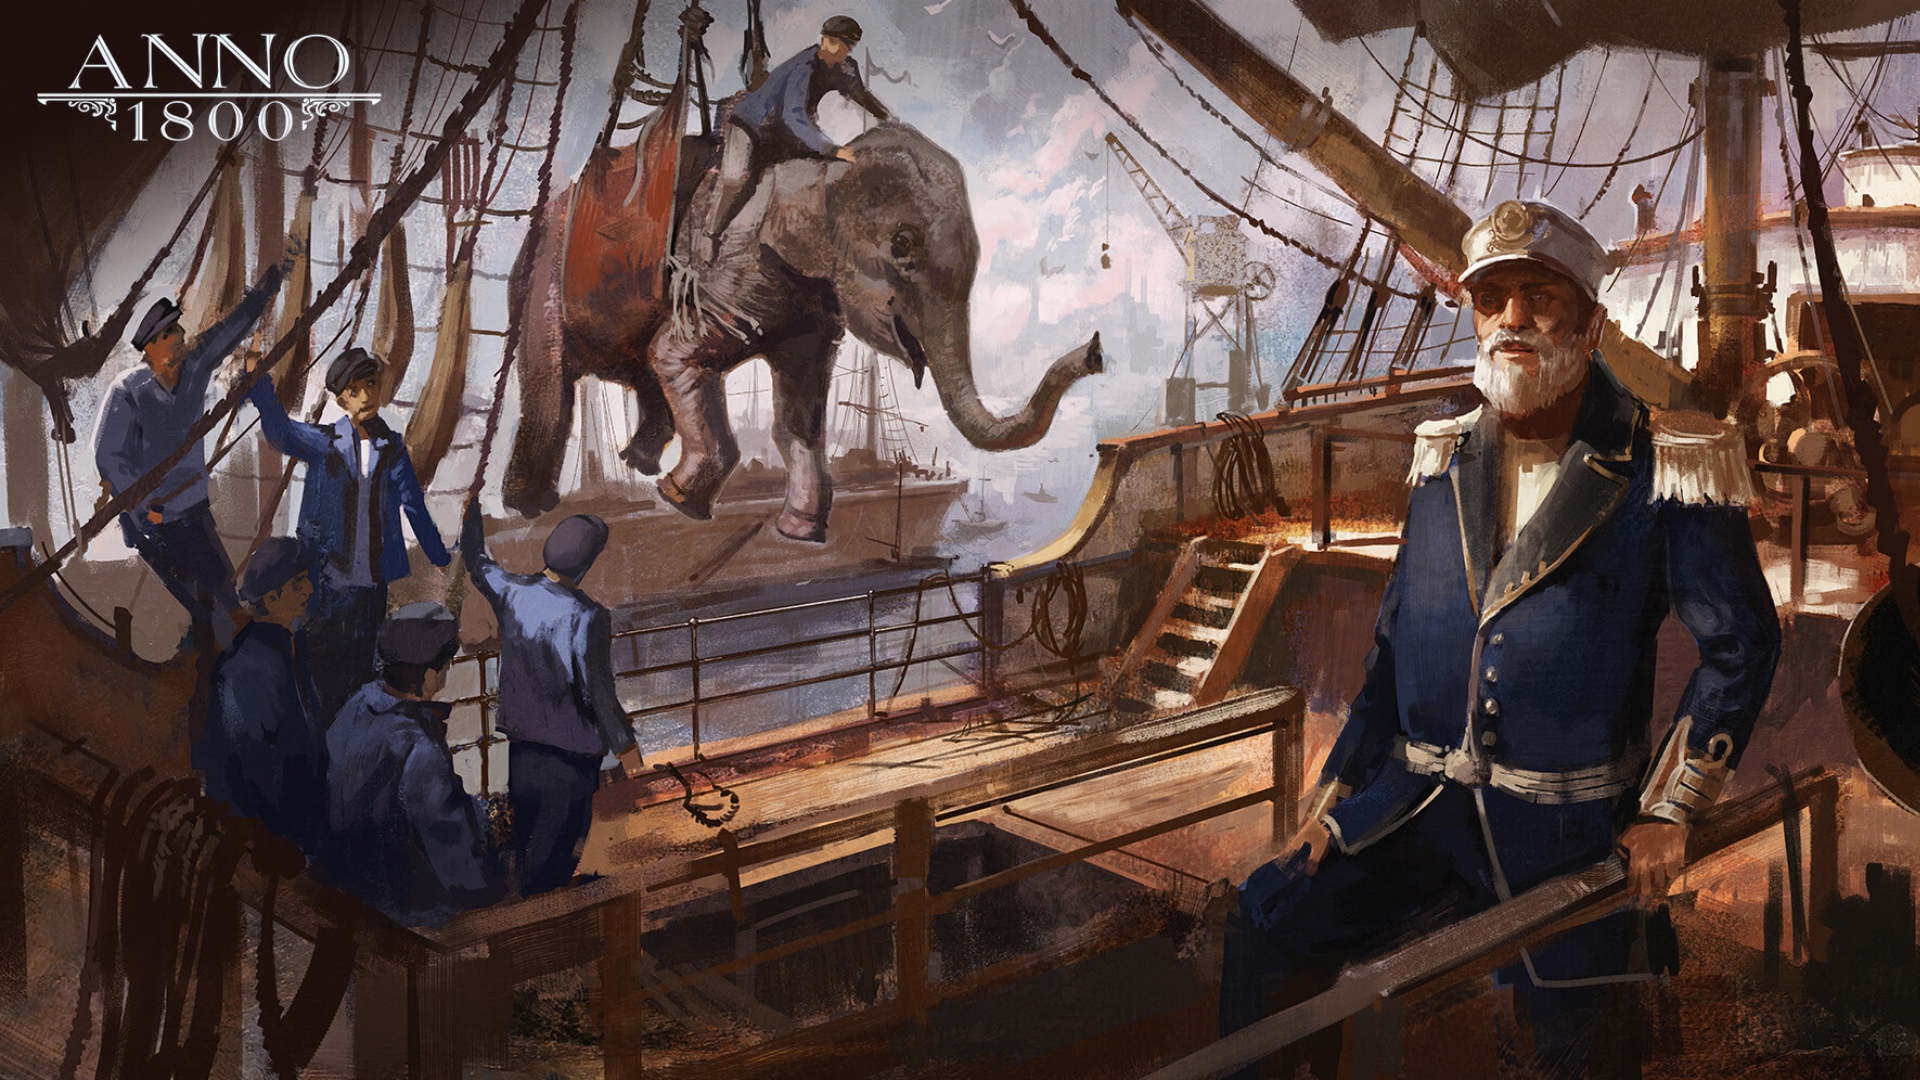 Anno 1800 1800s Digital Art Concept Art Artwork Ubisoft Elephant Sailing Ship Rigging Ship 1920x1080